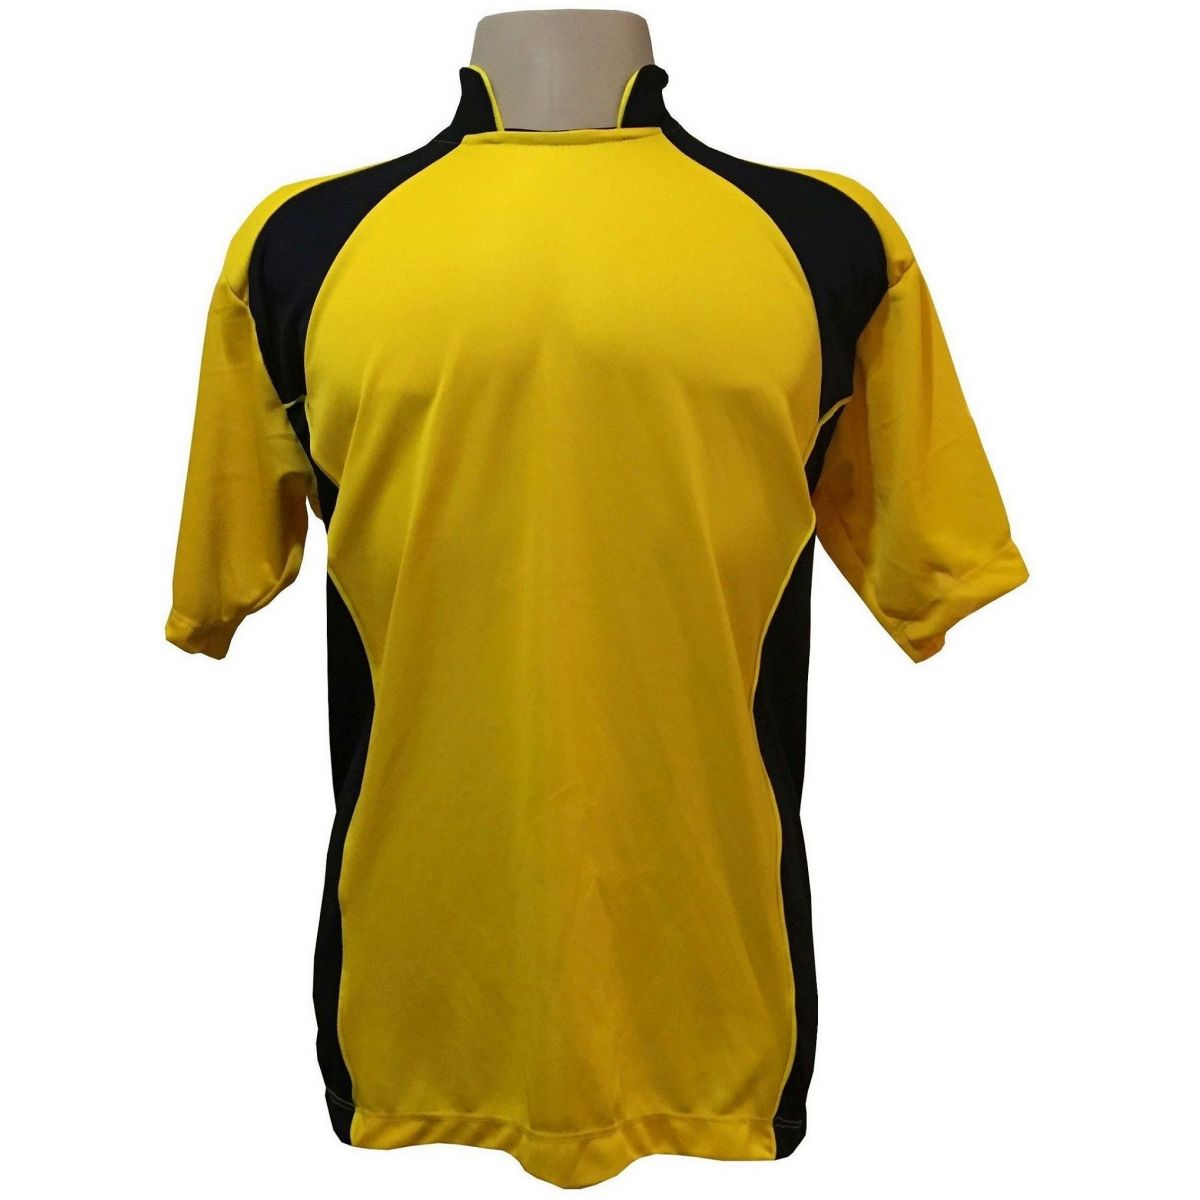 Uniforme Esportivo com 14 camisas modelo Suécia Amarelo/Preto + 14 calções modelo Madrid Preto + Brindes